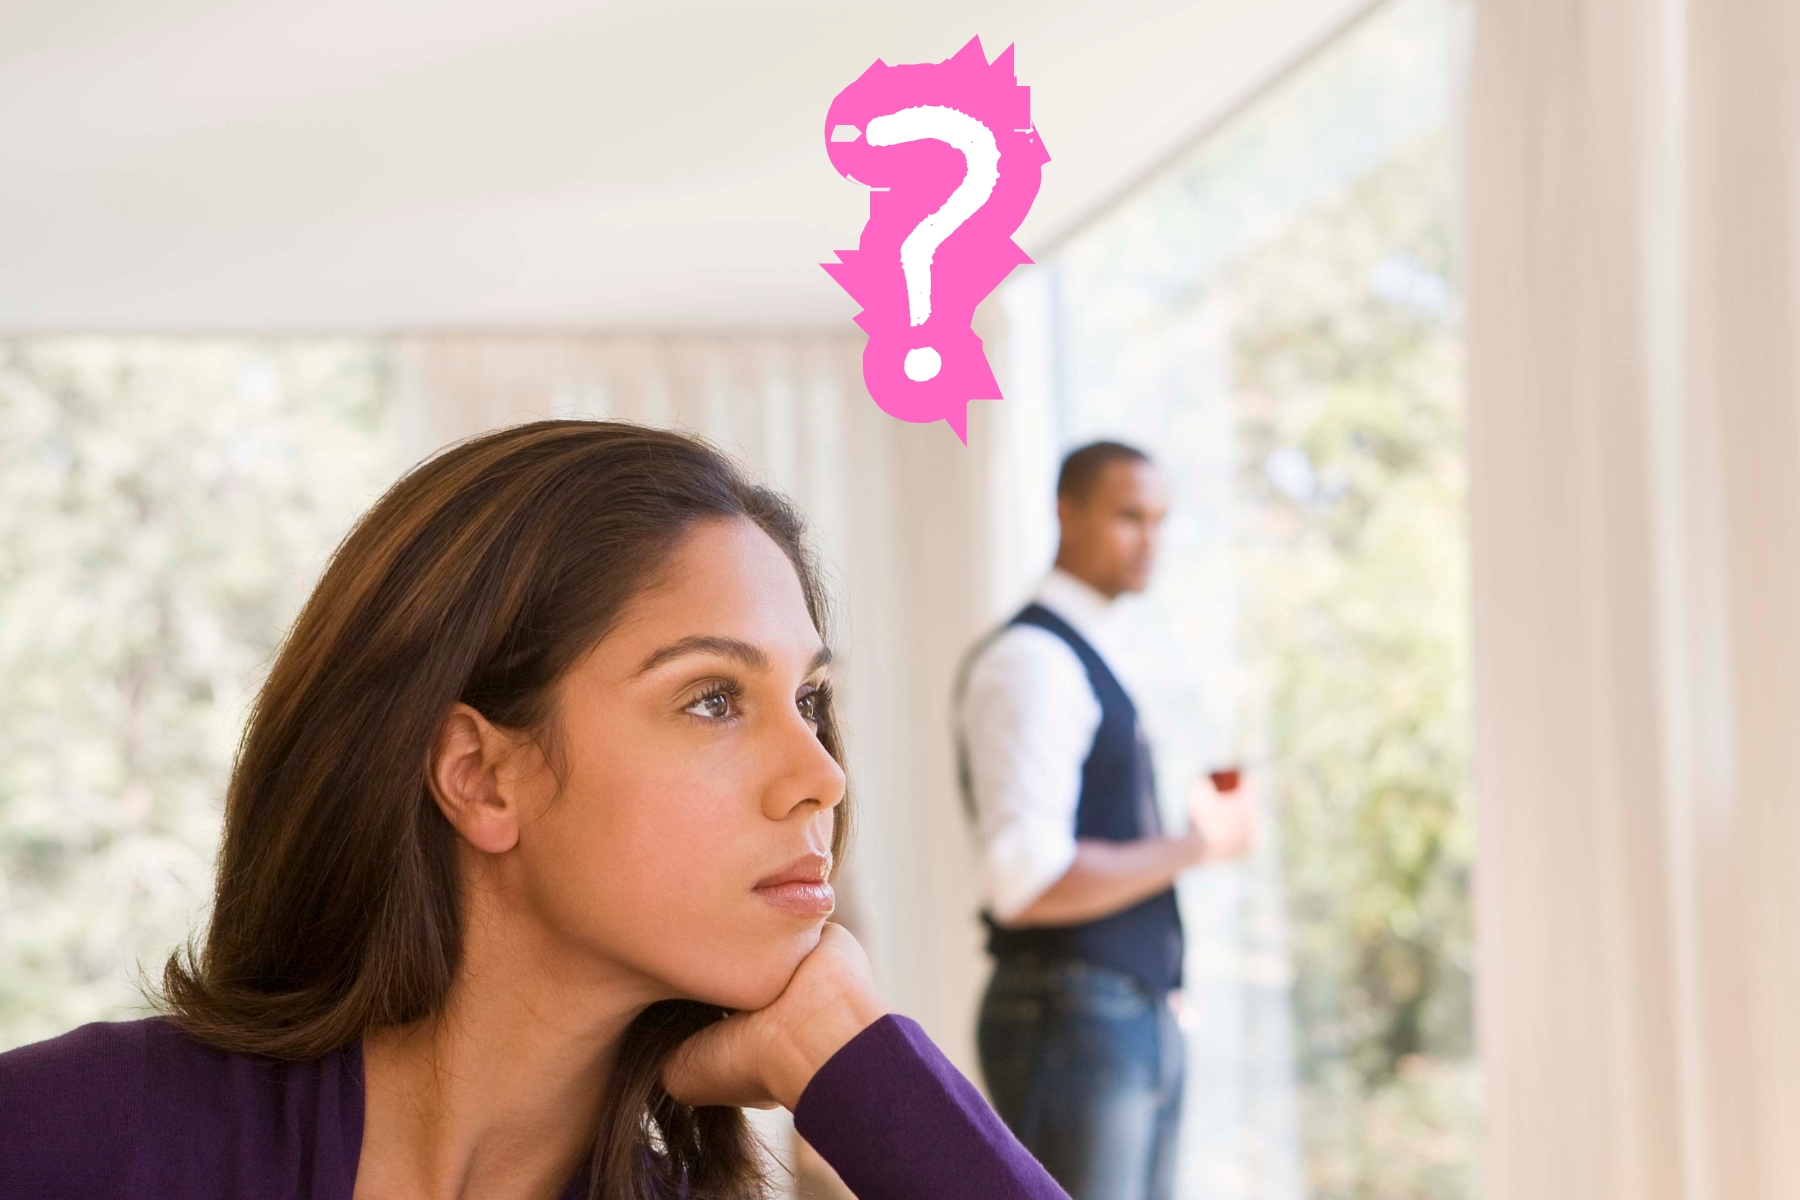 Descubra como identificar se sua namorada está pensando em terminar, com base em sinais de comportamento e comunicação.